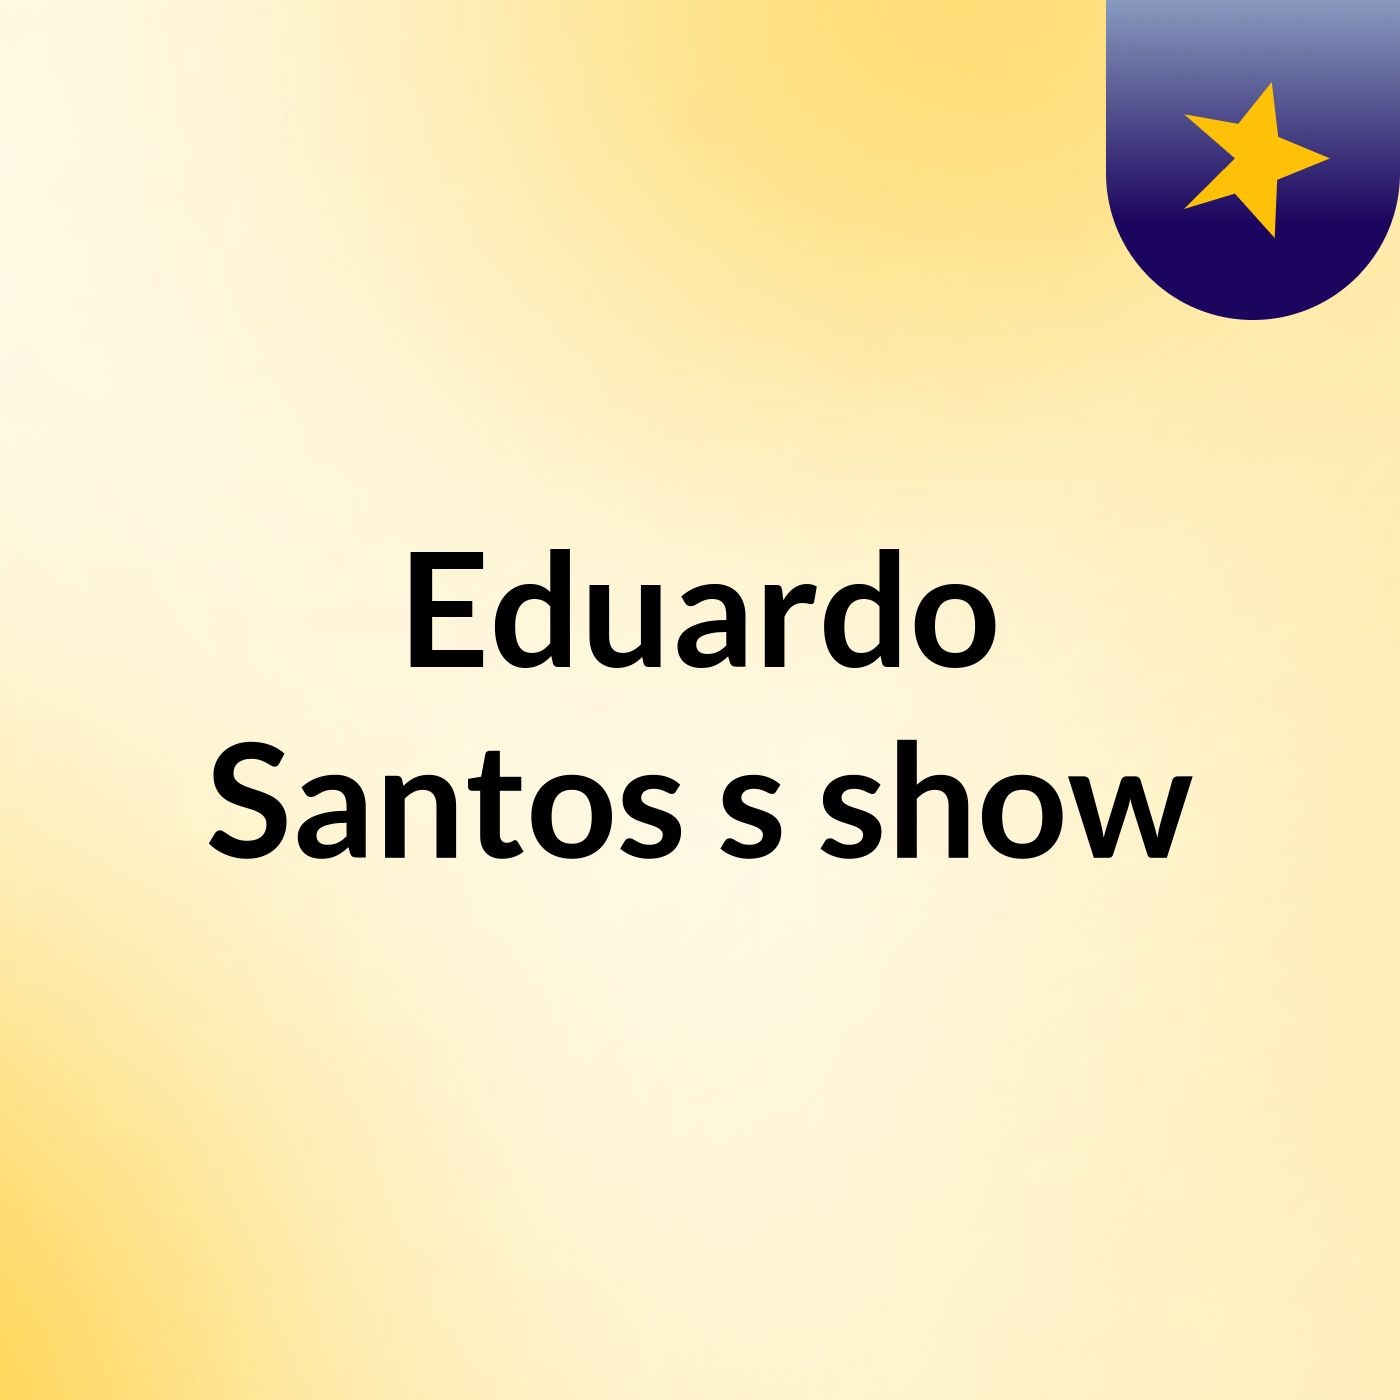 Eduardo Santos's show